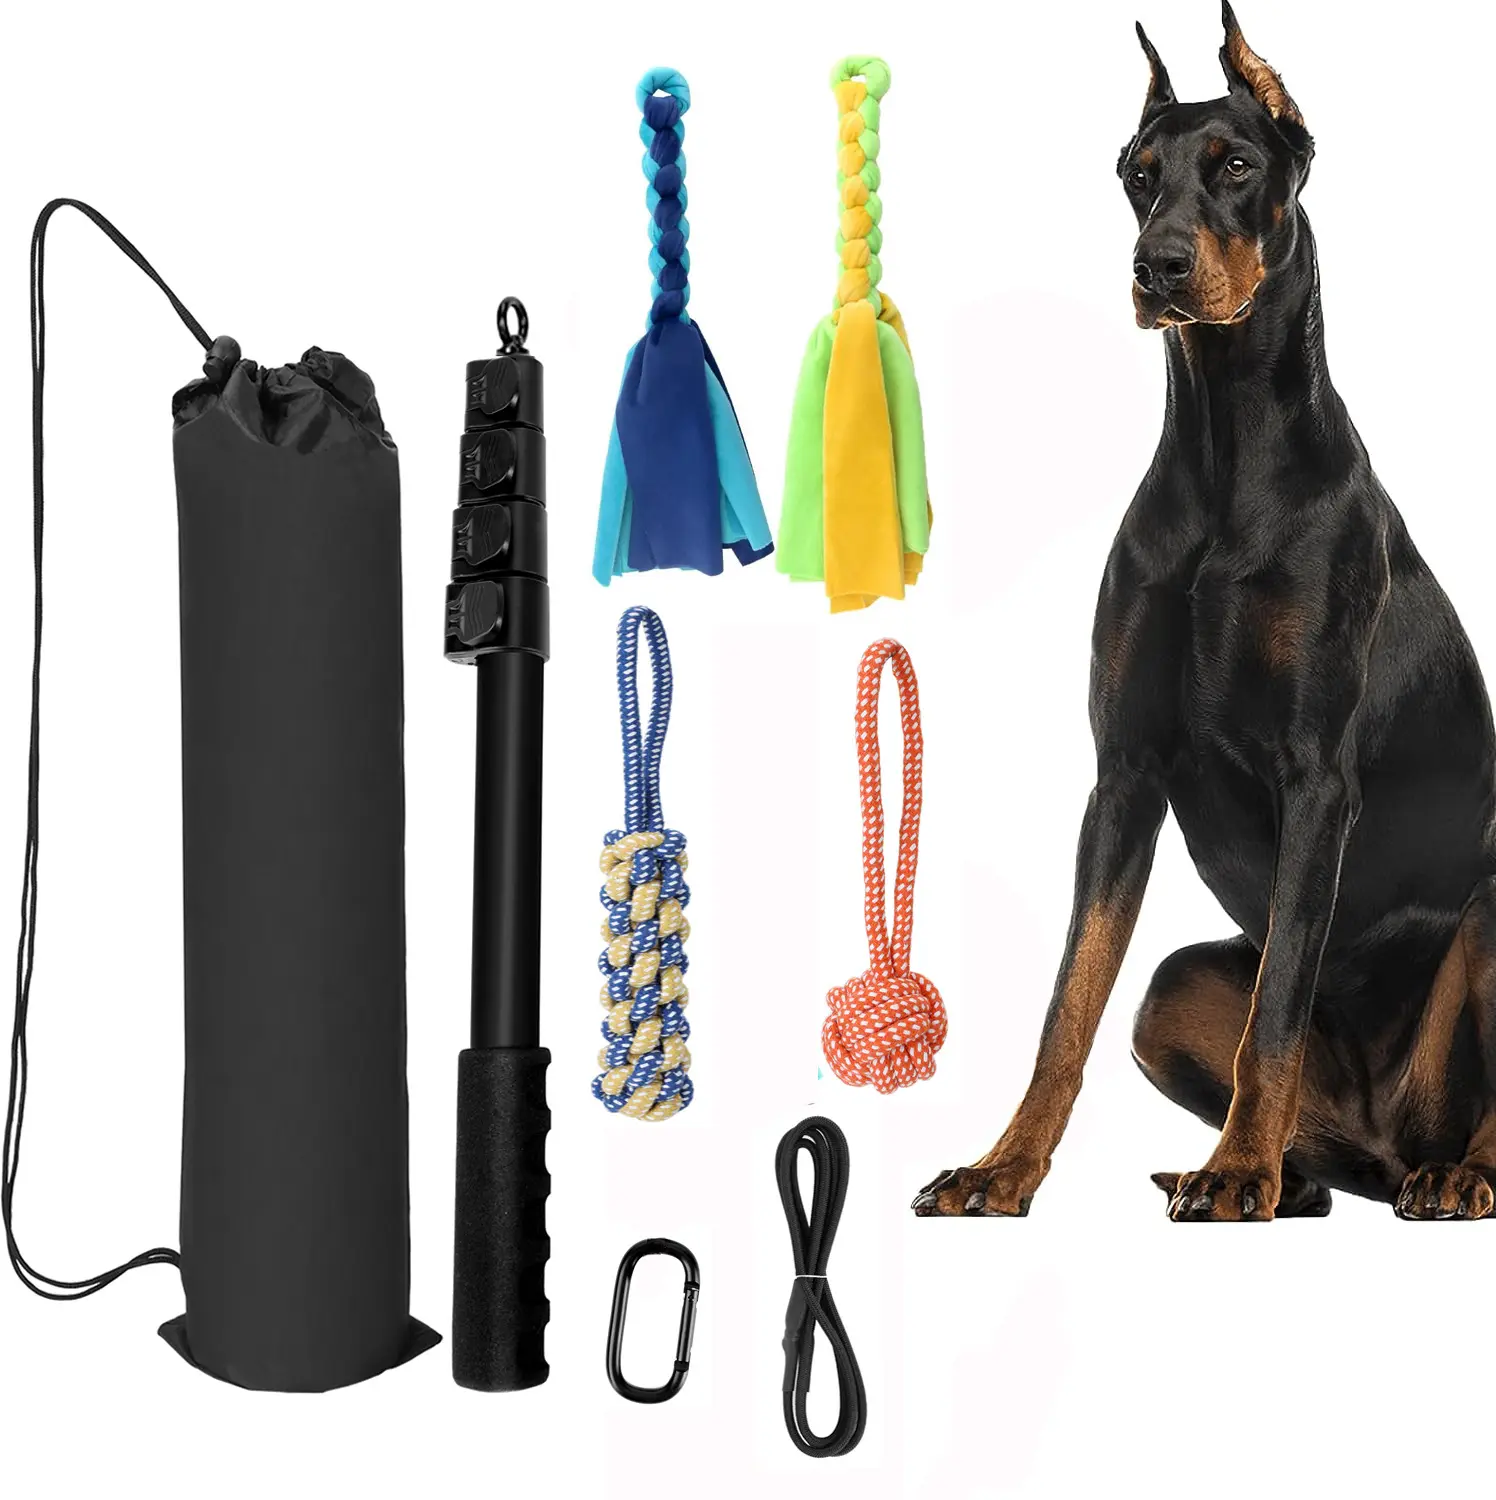 高品質のエクササイズインタラクティブなペットのおもちゃトレーニングエクササイズ犬のエクササイズ機器を引っ張る拡張可能な浮気ポール